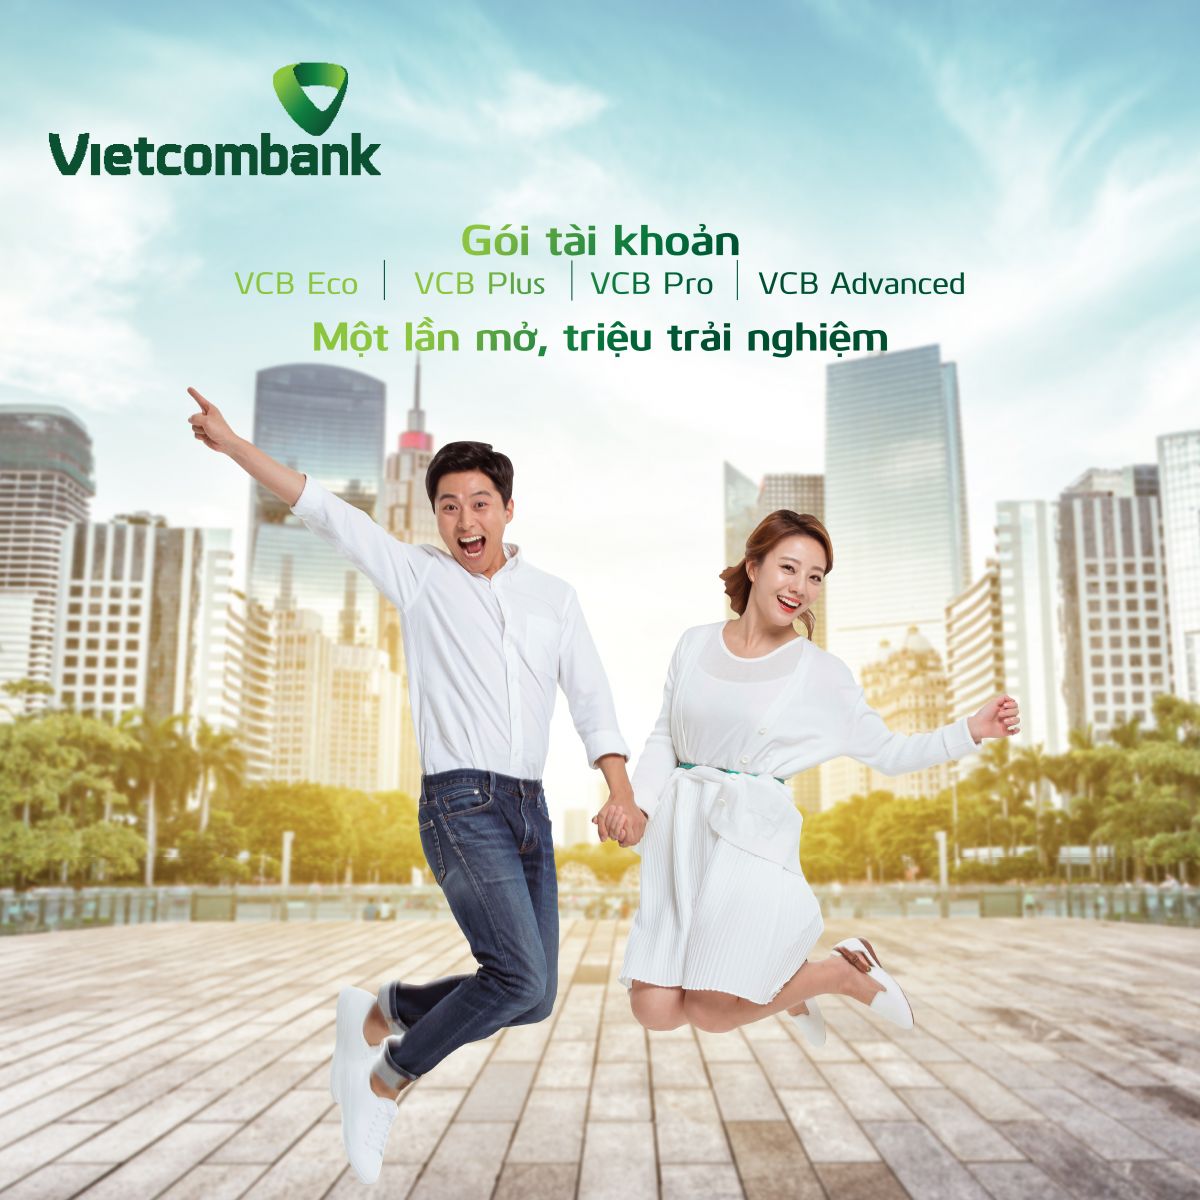 Vietcombank ra mắt 4 gói tài khoản đặc biệt